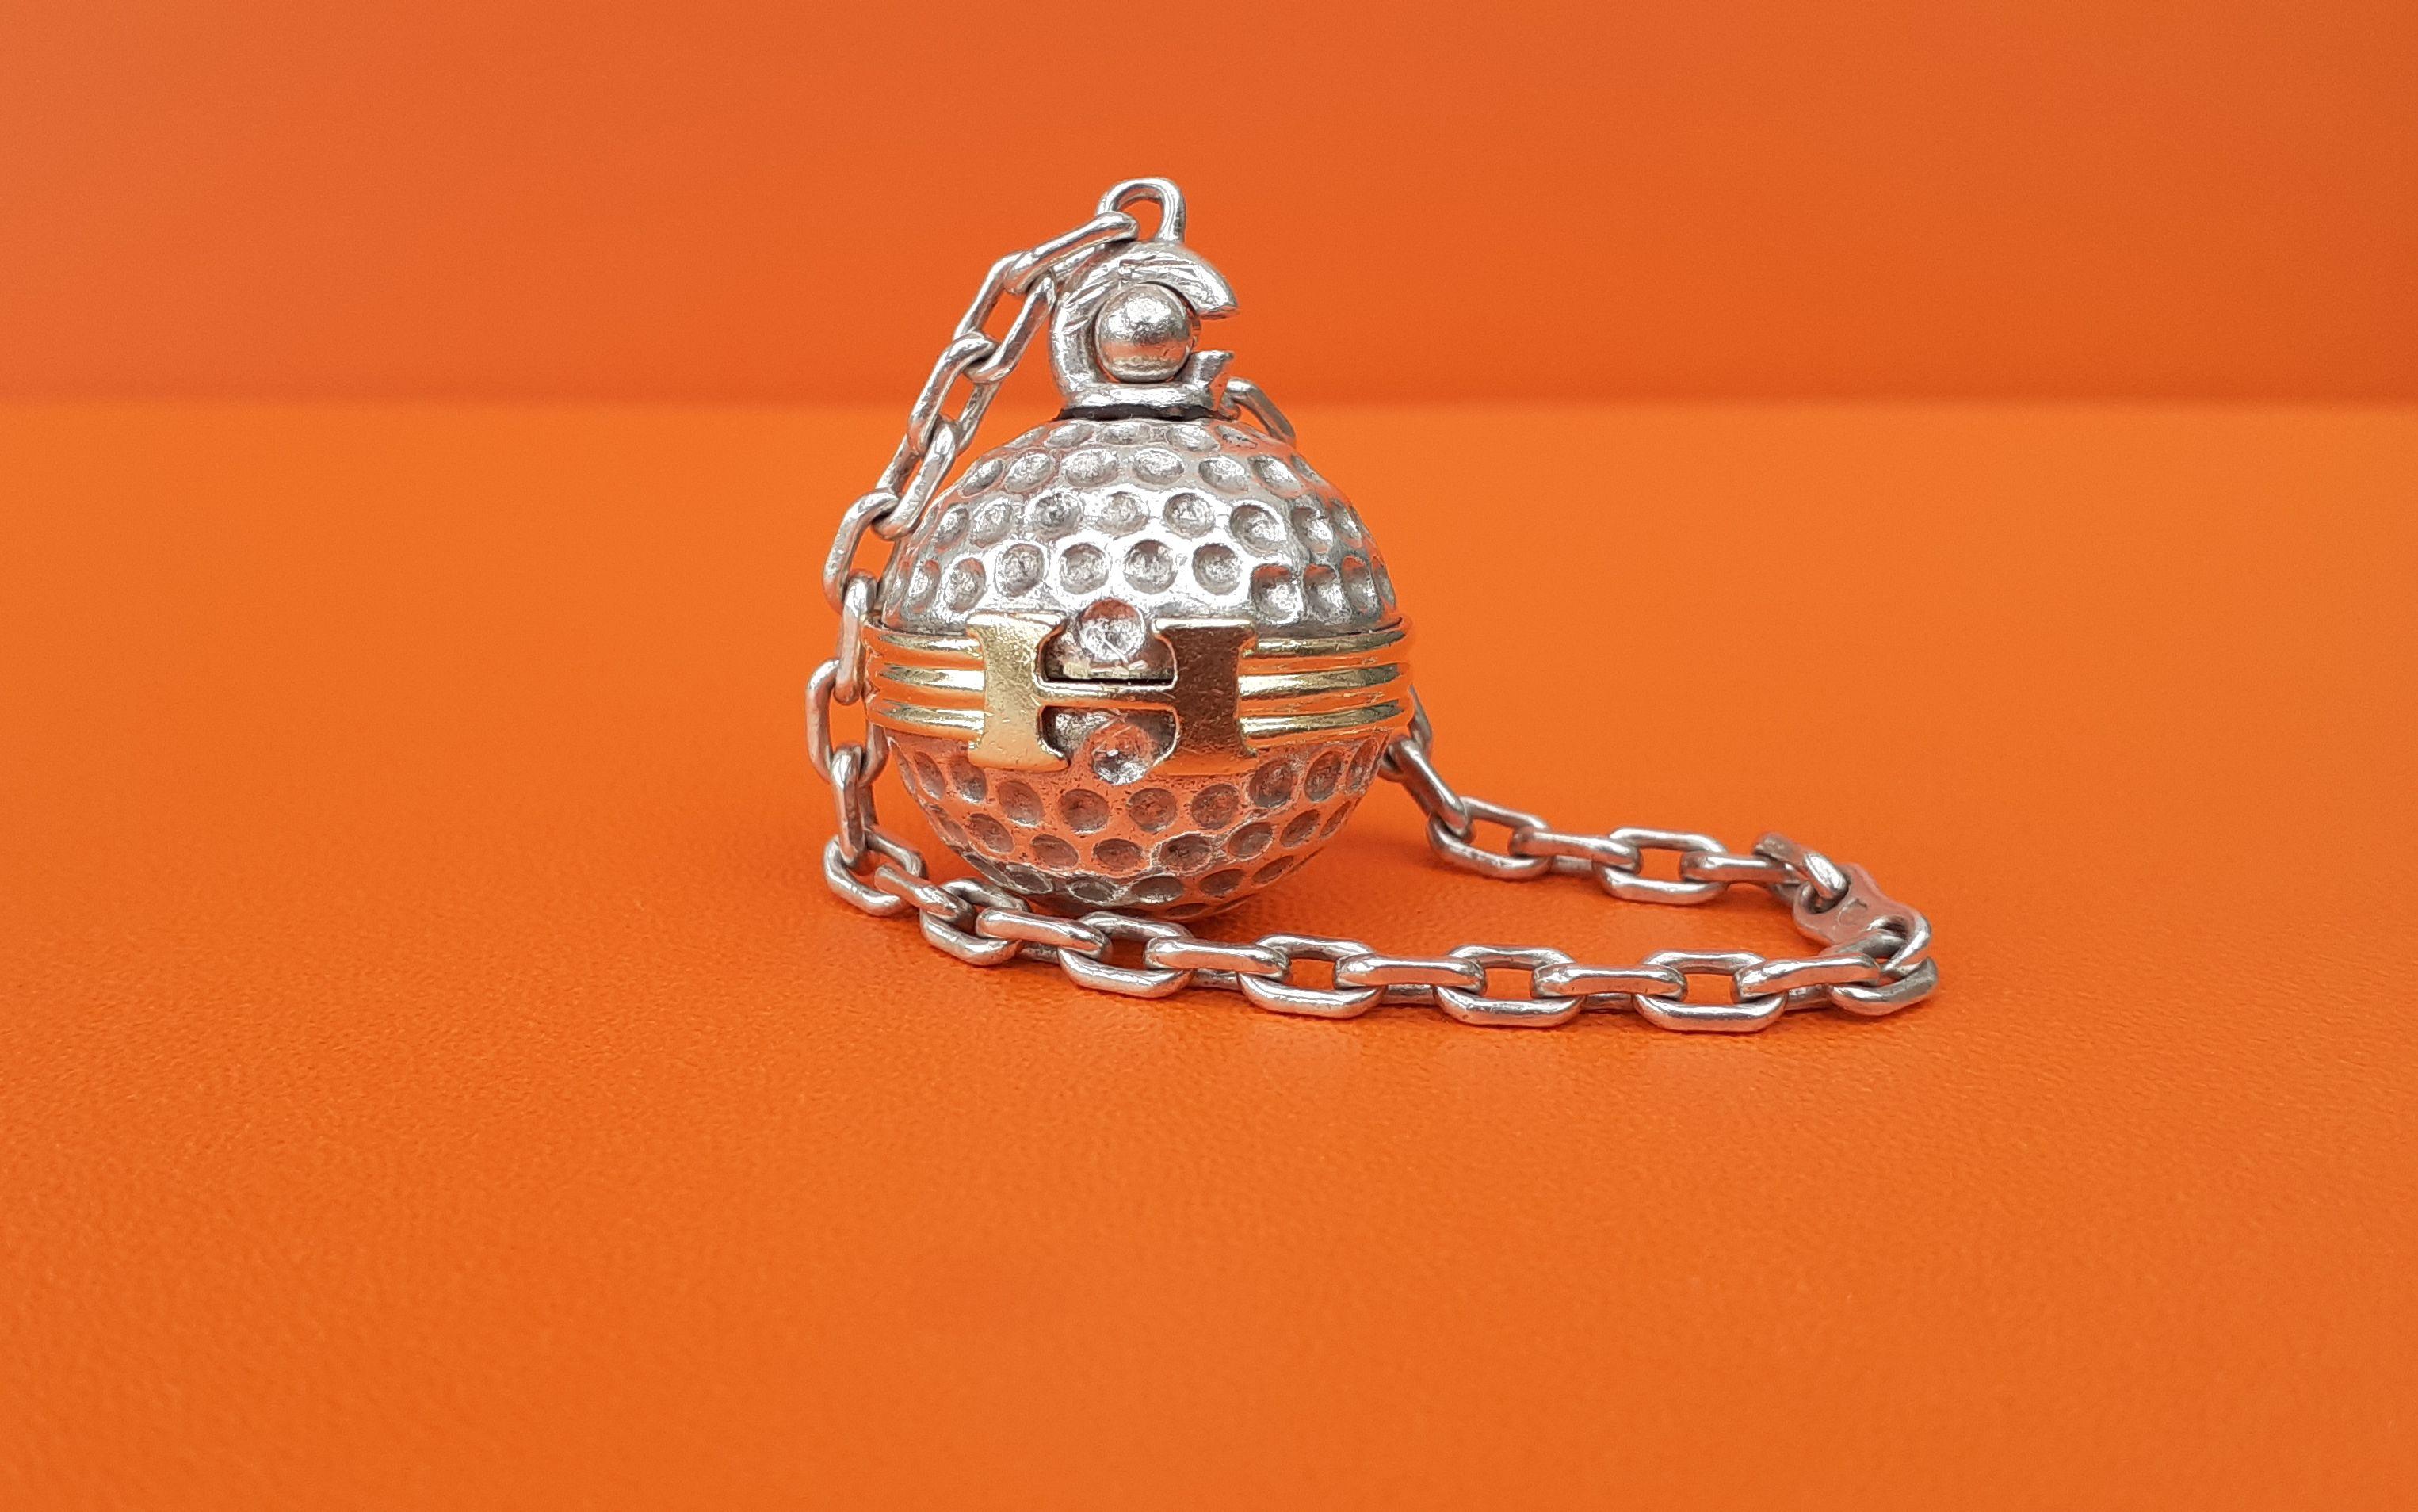 Seltener authentischer Hermès Schlüsselanhänger

Form eines Golfballs, umgeben von einem goldenen Gürtel mit H-Schnalle

Vintage By

Hergestellt aus Silber und Vermeil

Farben: silbern, golden

Gravur 